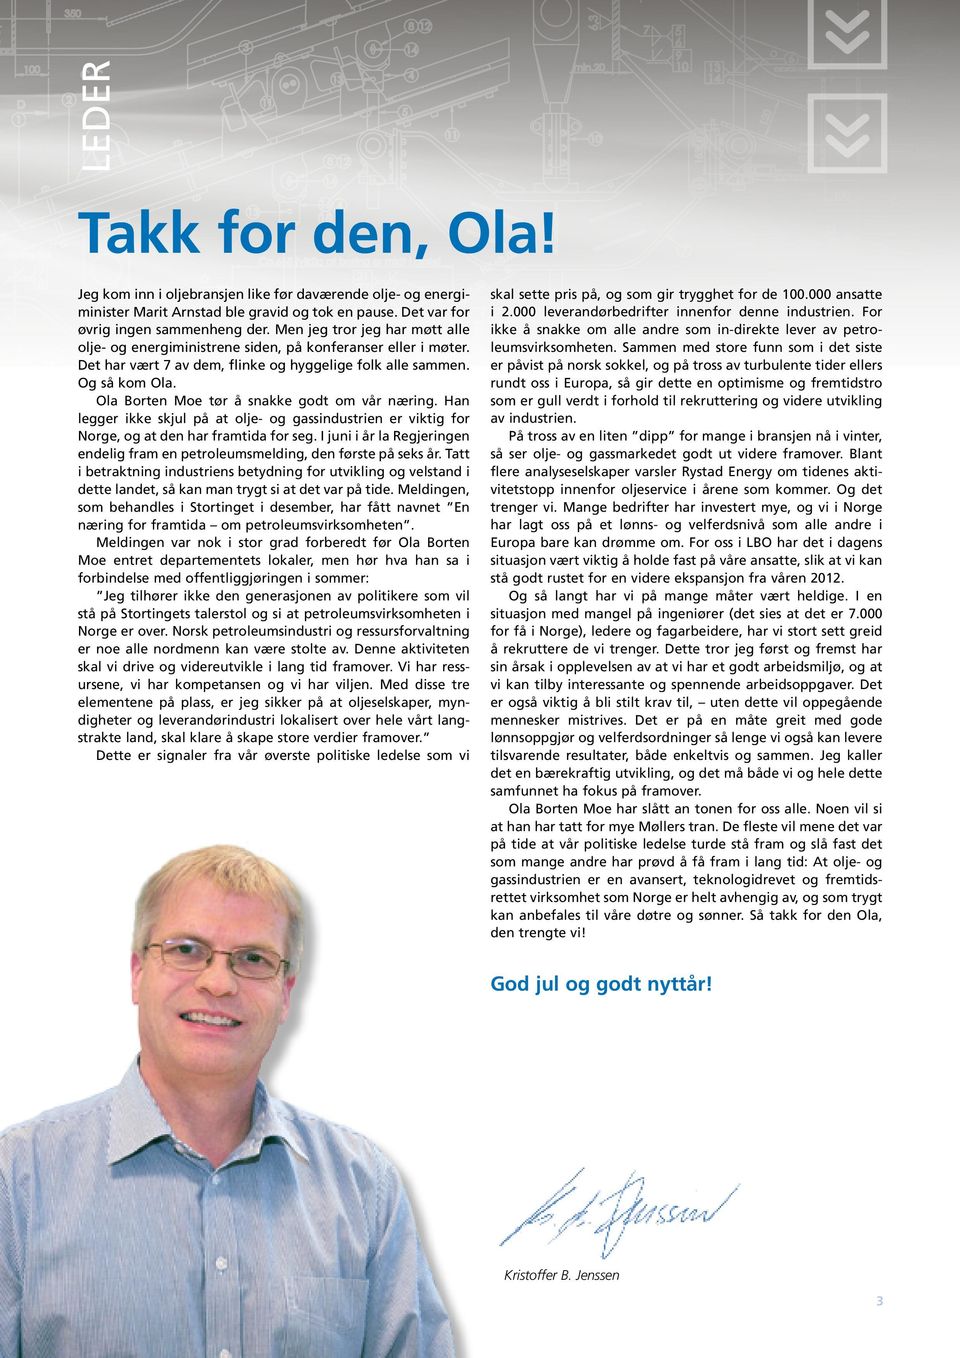 Ola Borten Moe tør å snakke godt om vår næring. Han legger ikke skjul på at olje- og gassindustrien er viktig for Norge, og at den har framtida for seg.